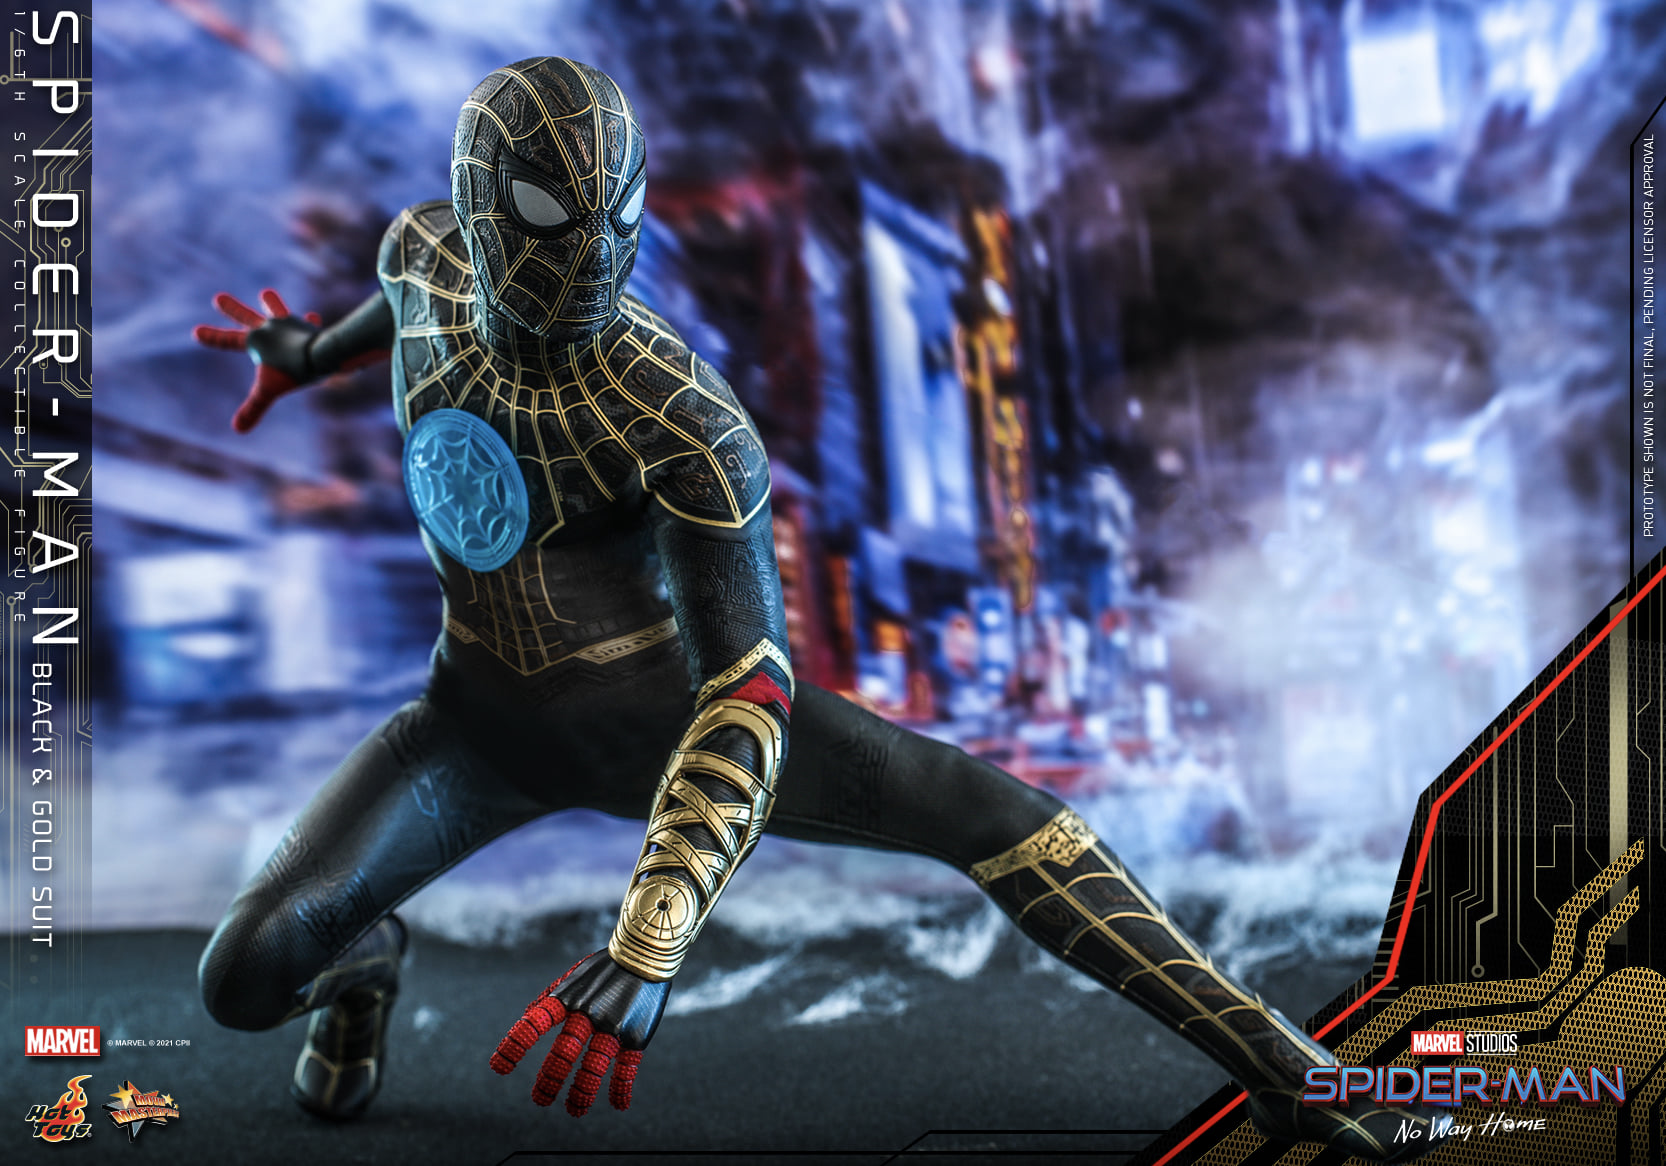 Homem-Aranha:No Way Home's o traje preto atira teia com energia mágica 1